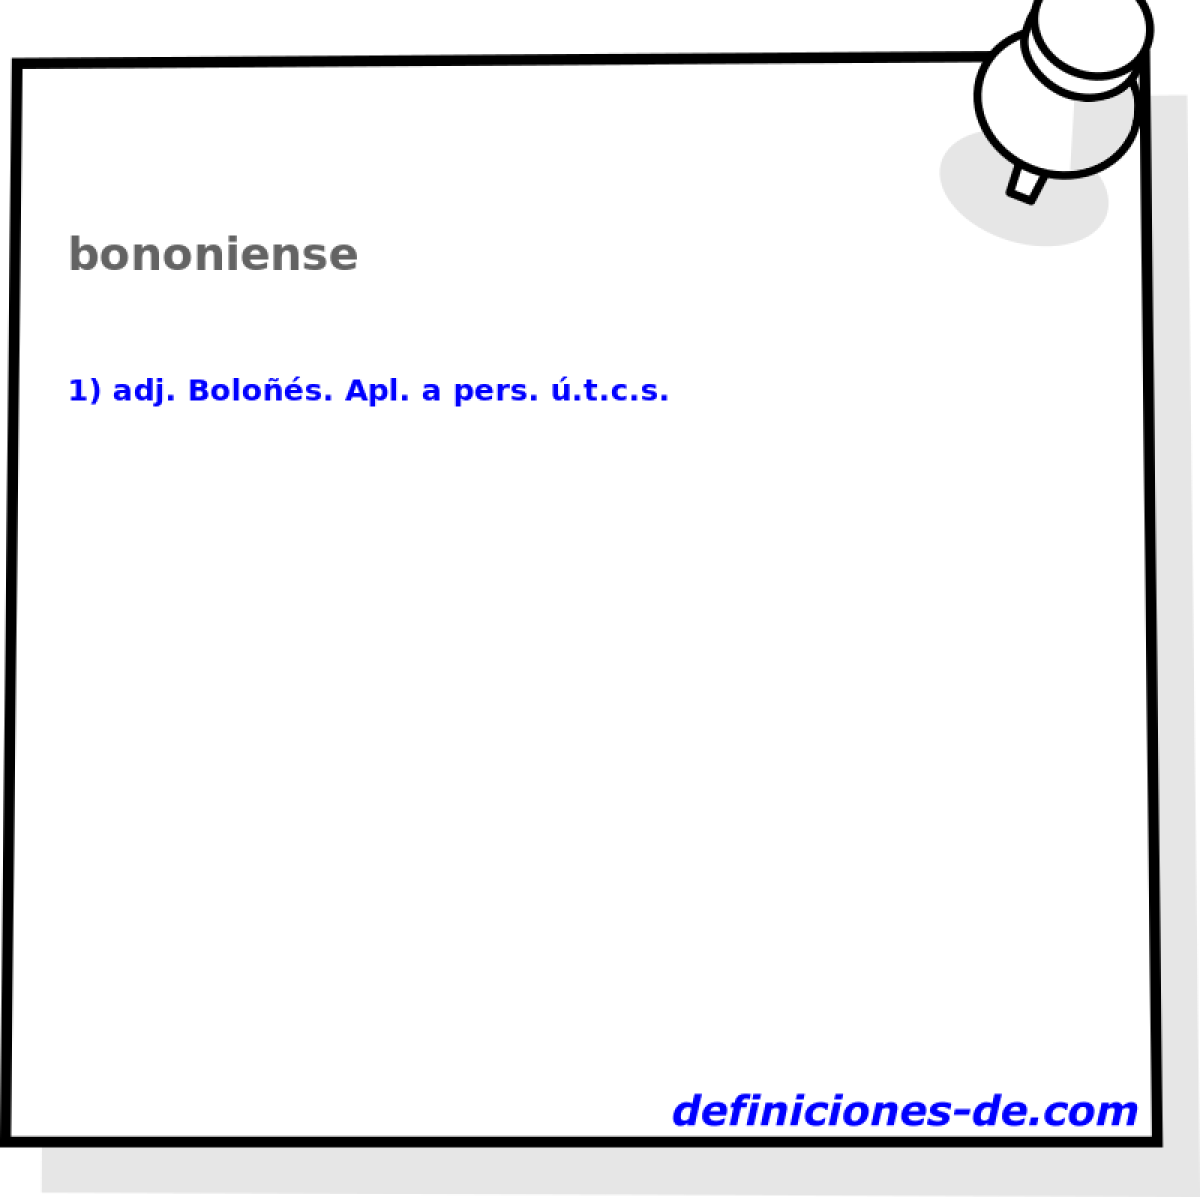 bononiense 